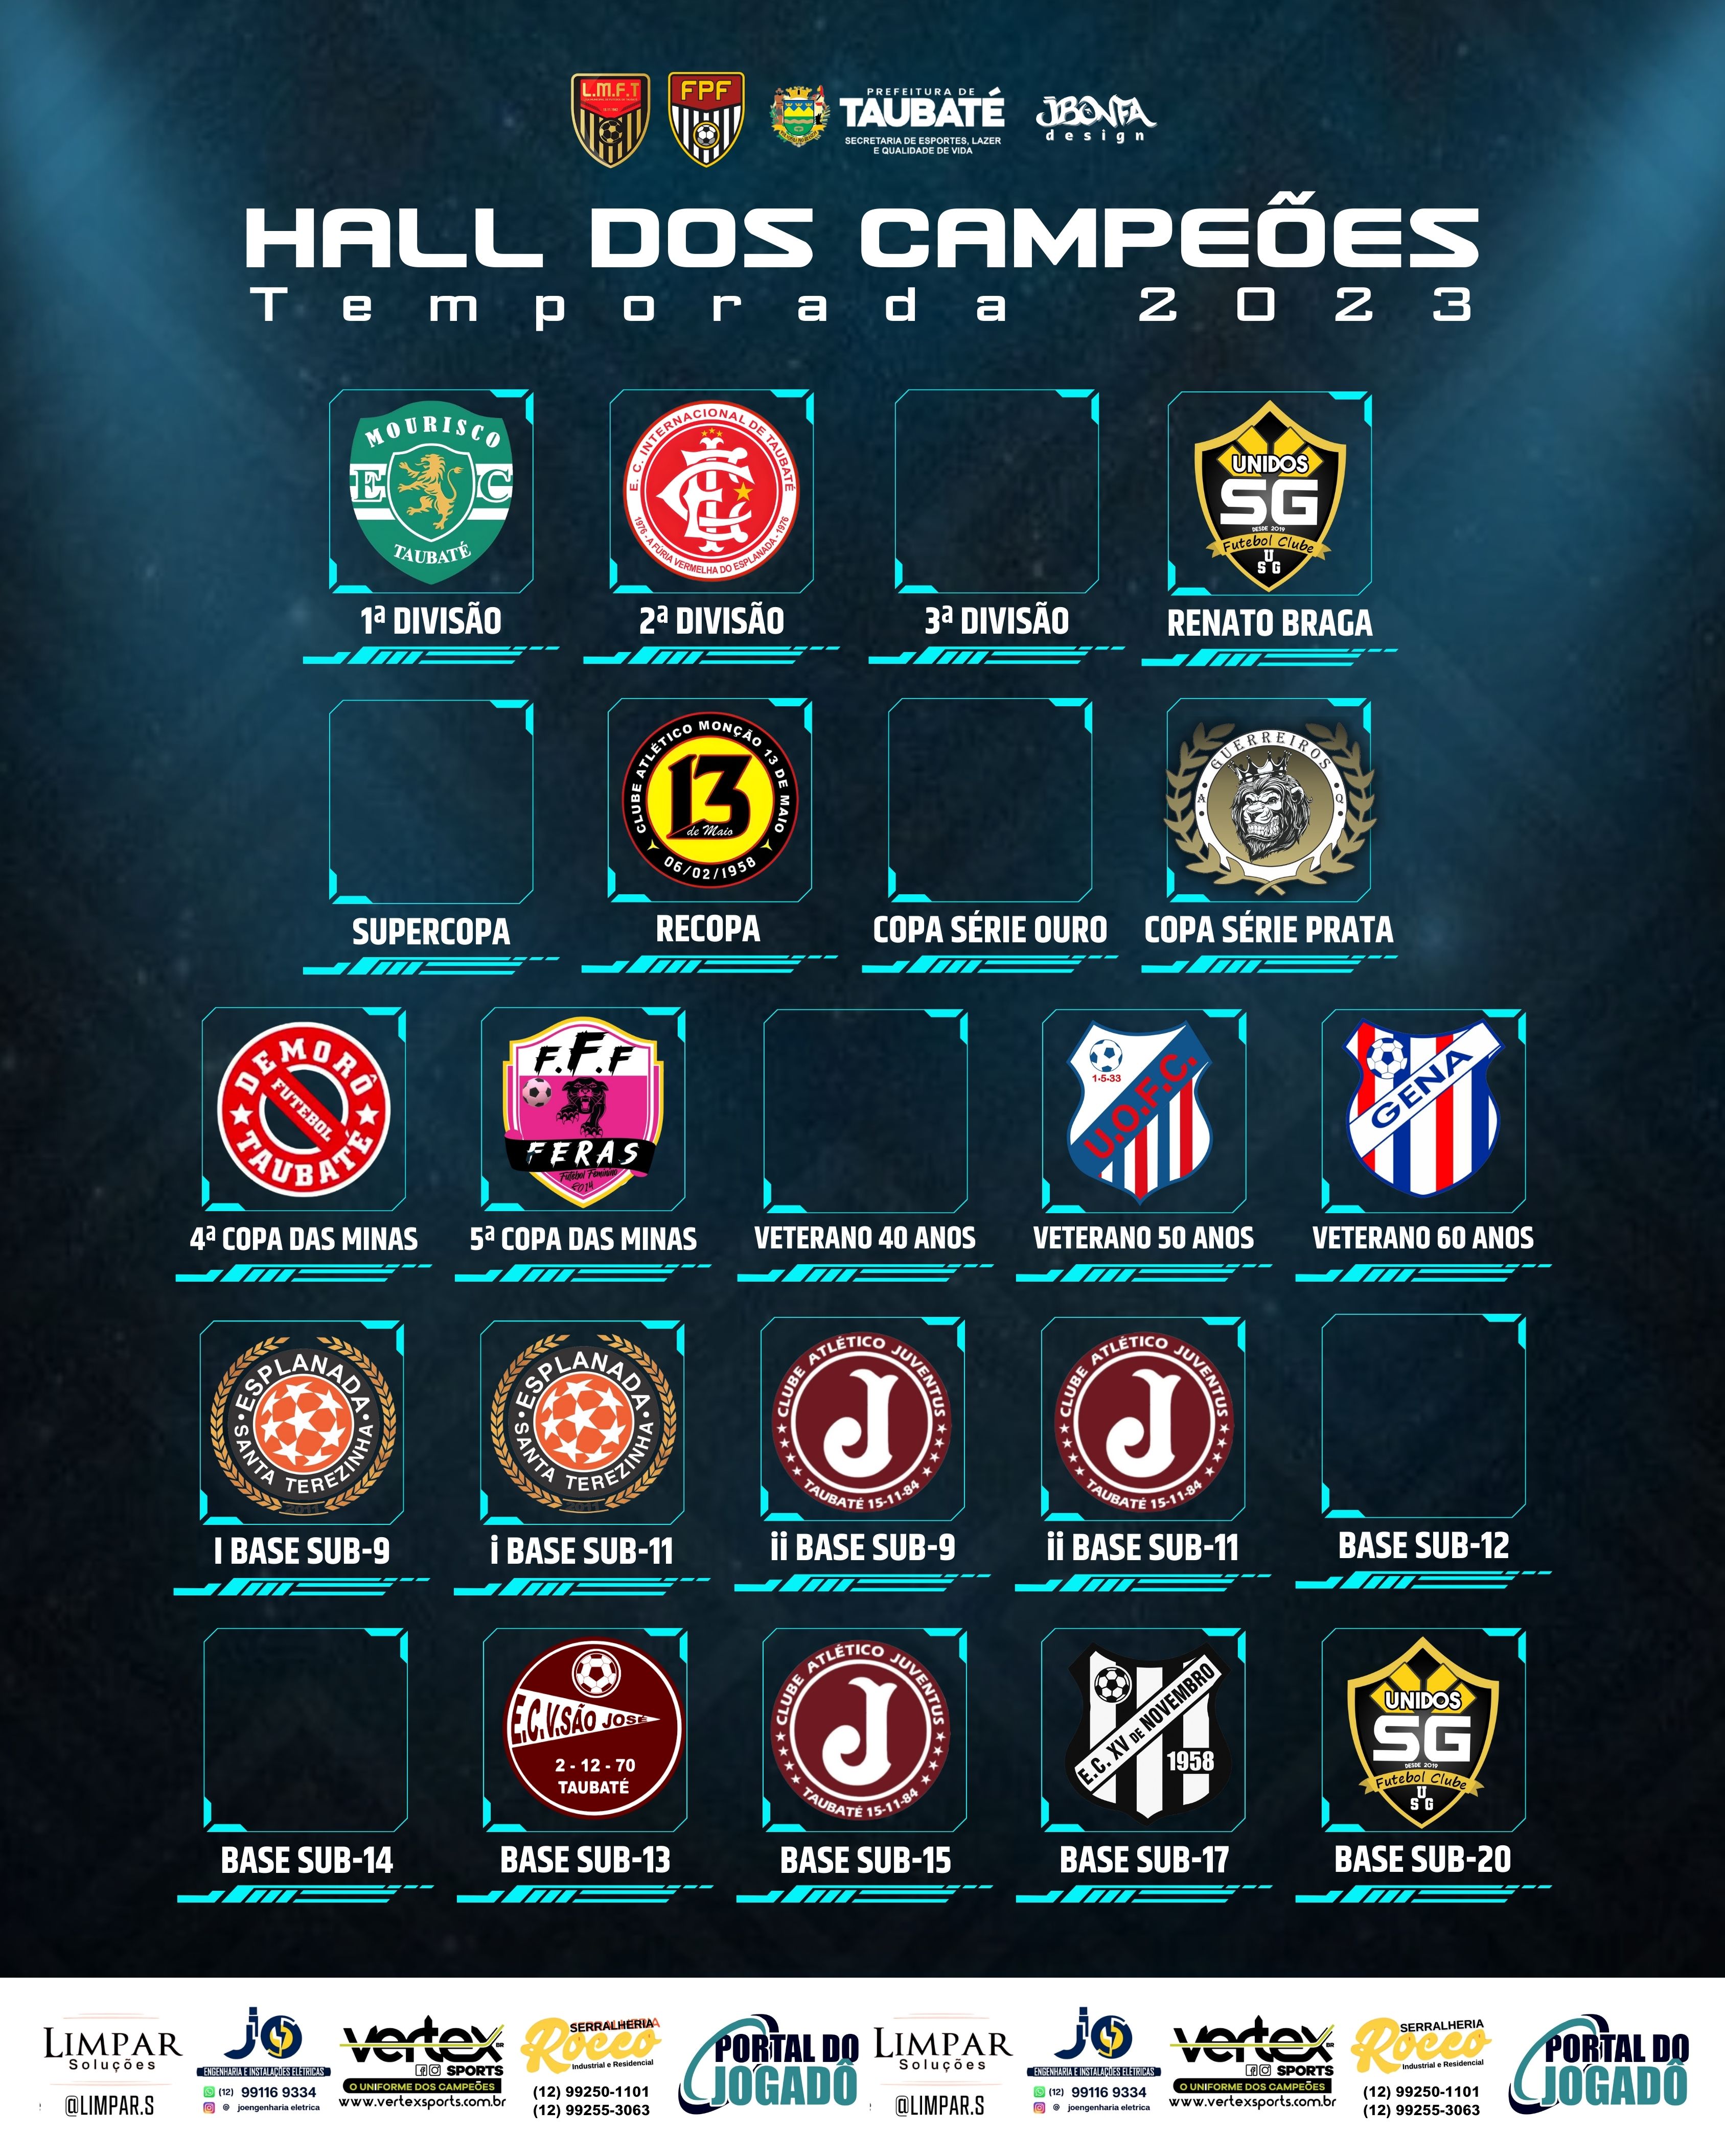 Hall dos Campeões 2023 atualizado com sucesso!